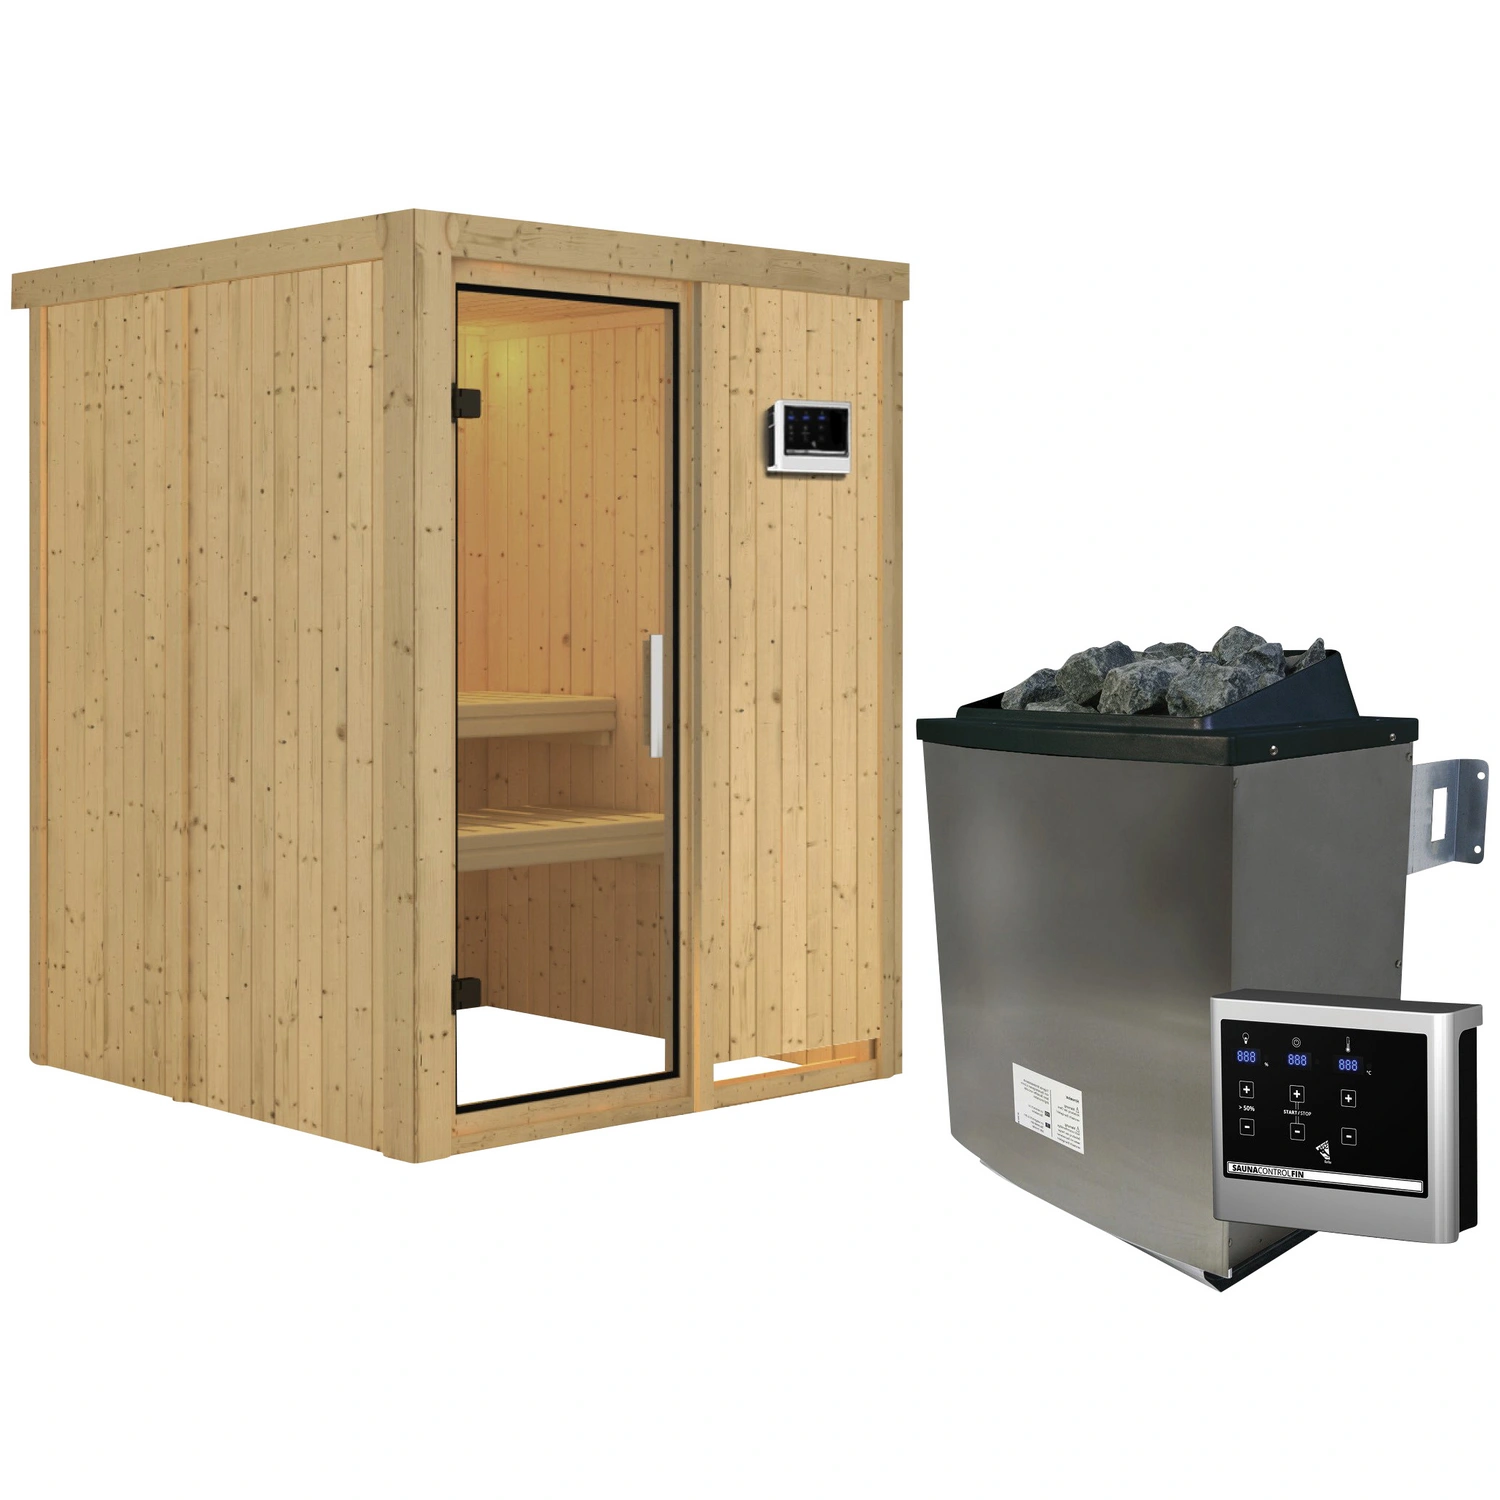 KARIBU Sauna »Tallinn«, inkl. 9 kW Saunaofen mit externer Steuerung, für 3  Personen